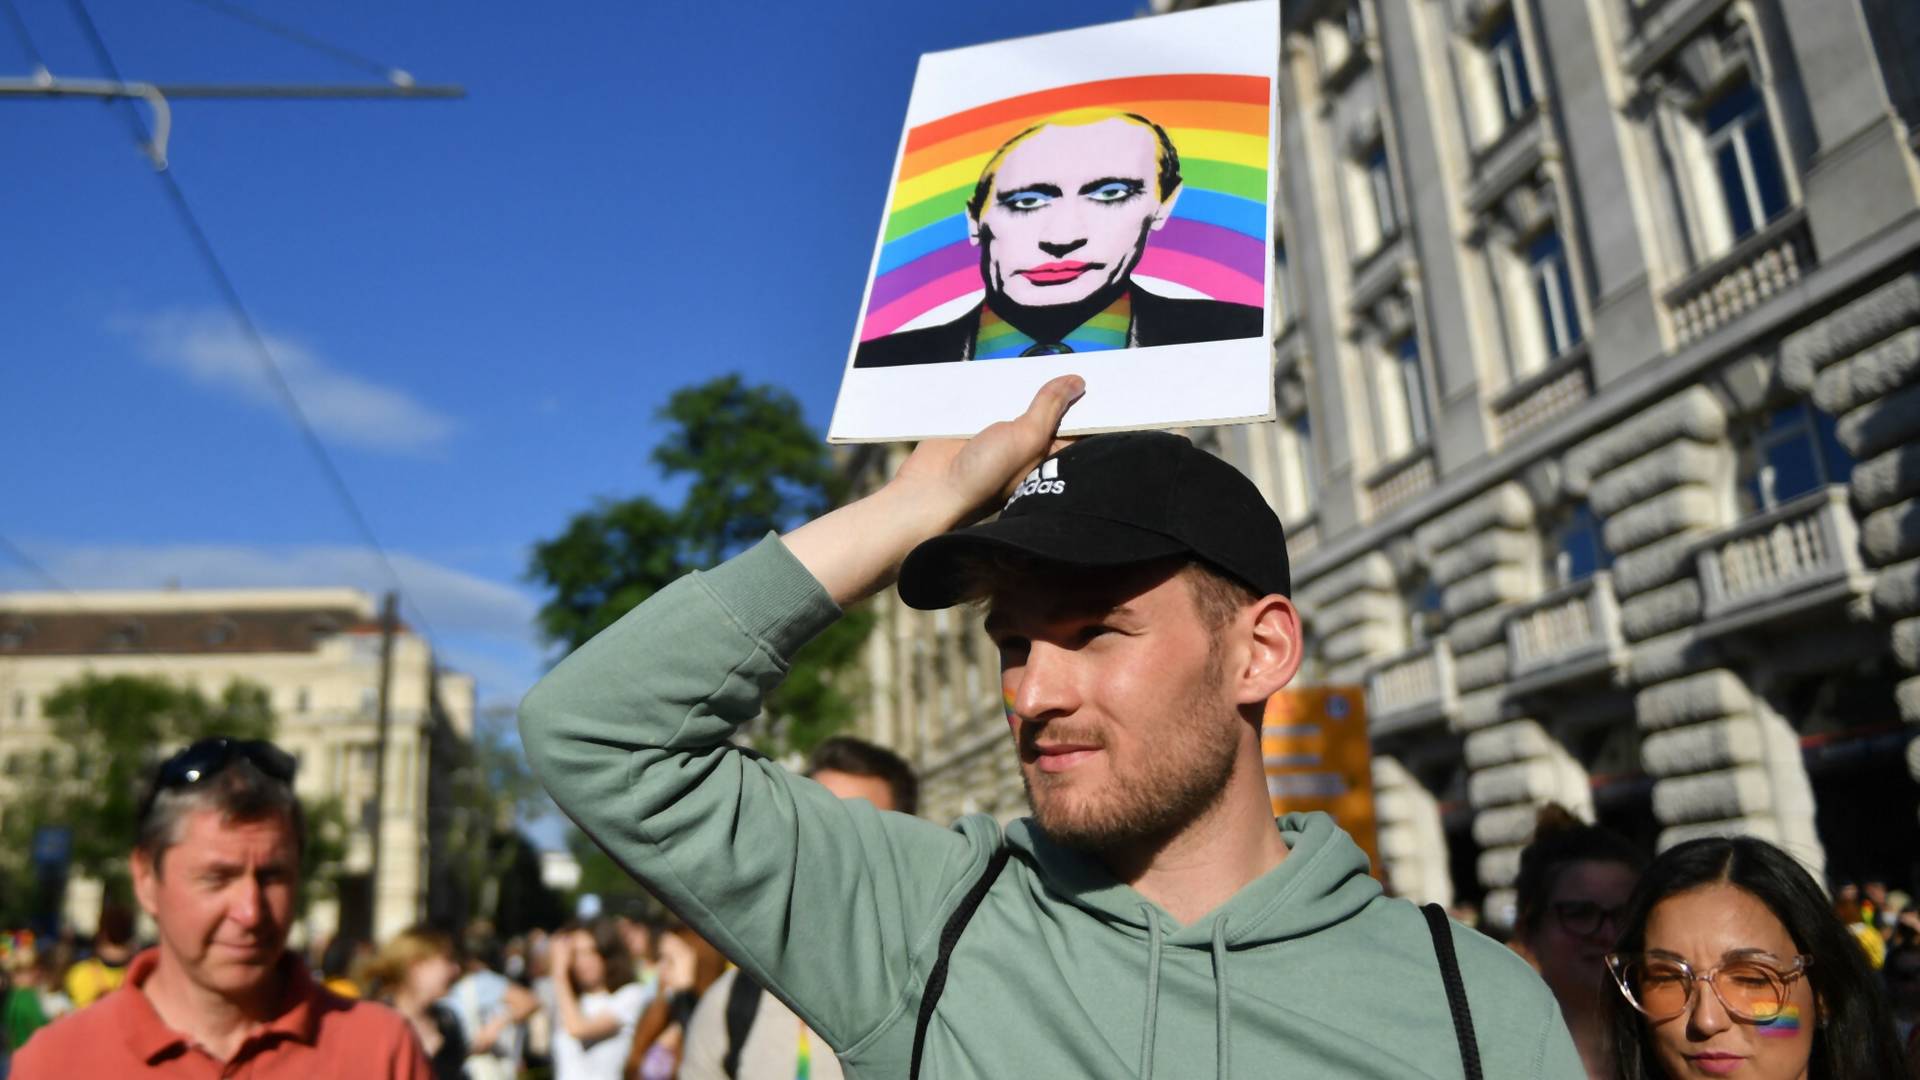 Będzie referendum ws. "propagandy LGBT" na Węgrzech. Pytania mogą być manipulujące